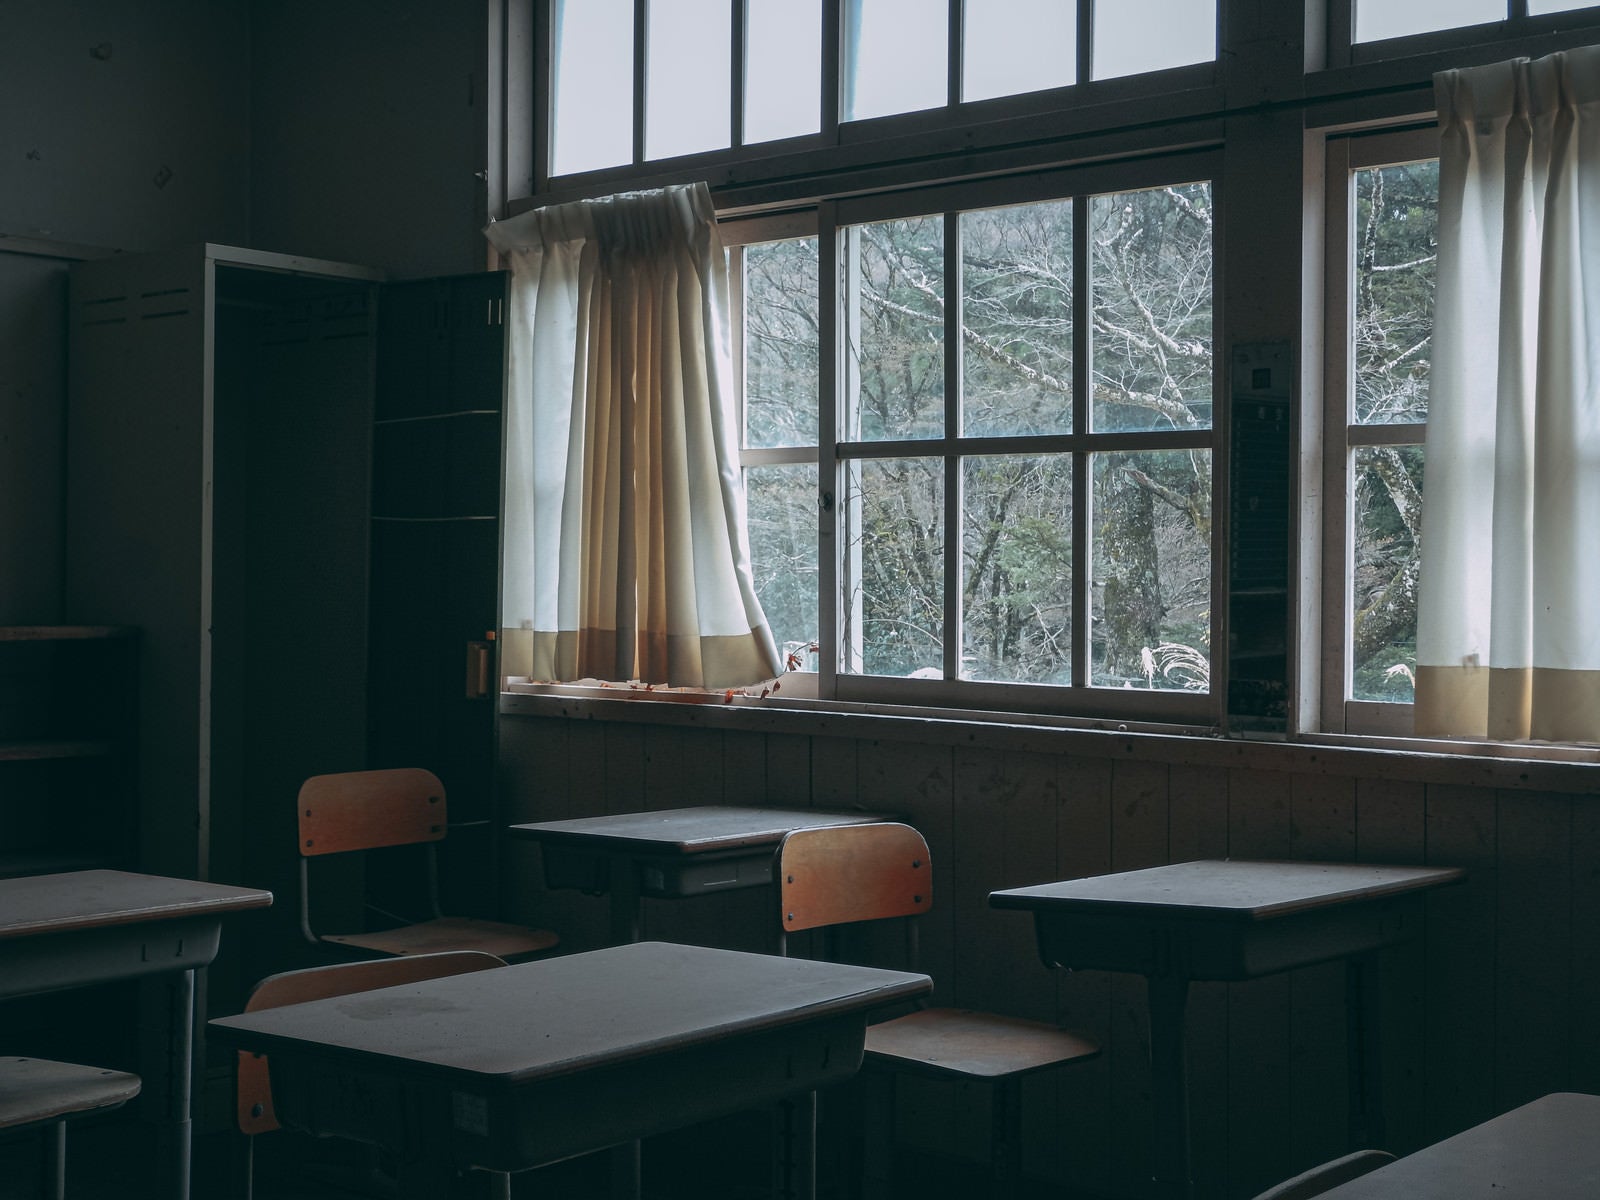 「誰もいない廃教室」の写真